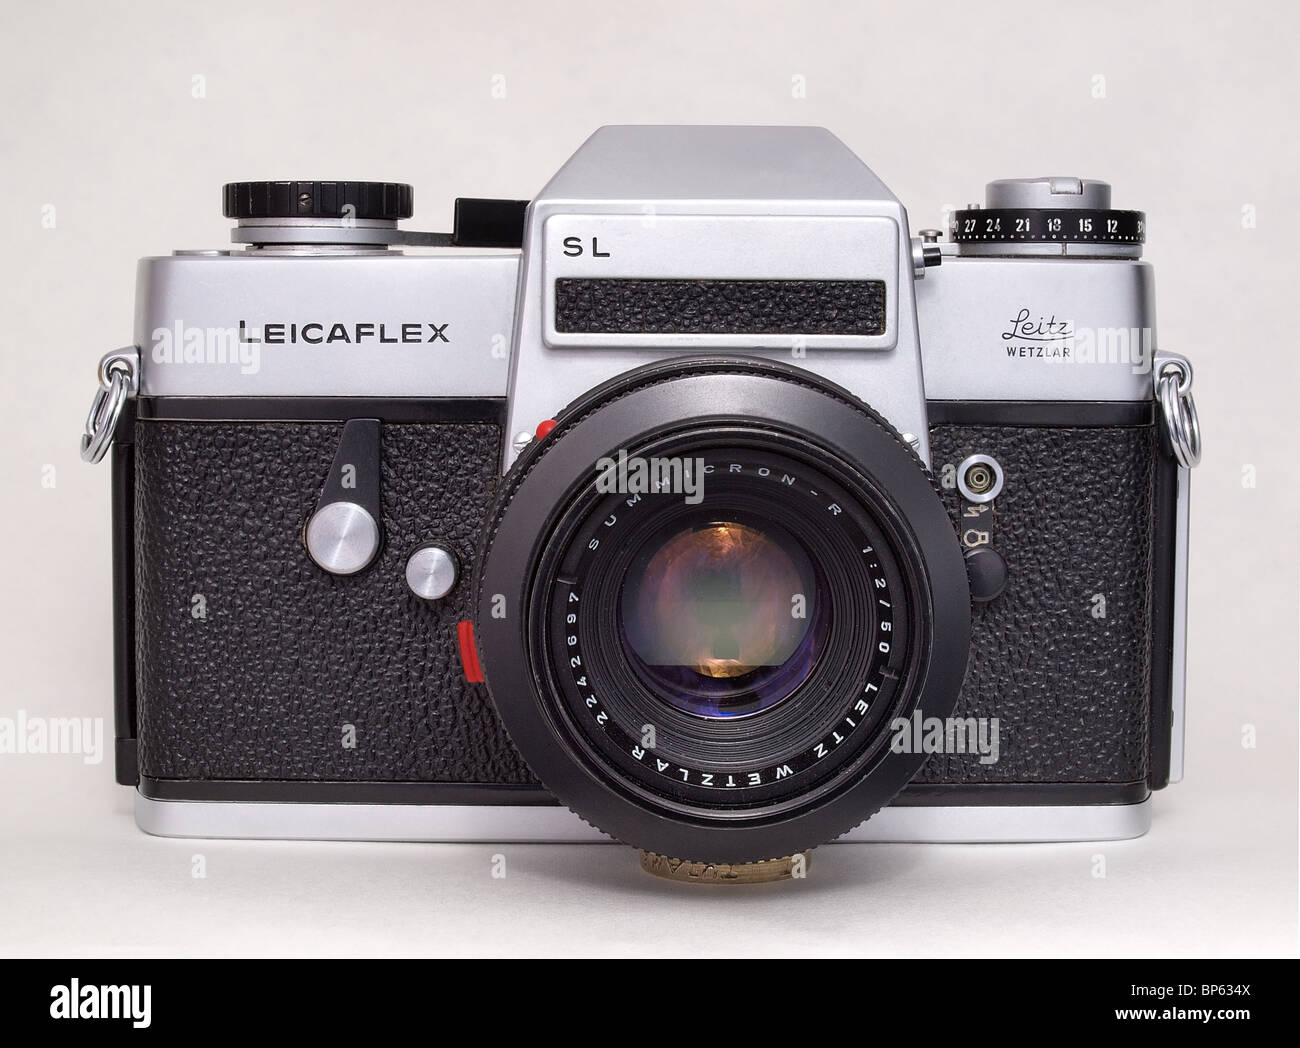 Leicaflex SL Stock Photo